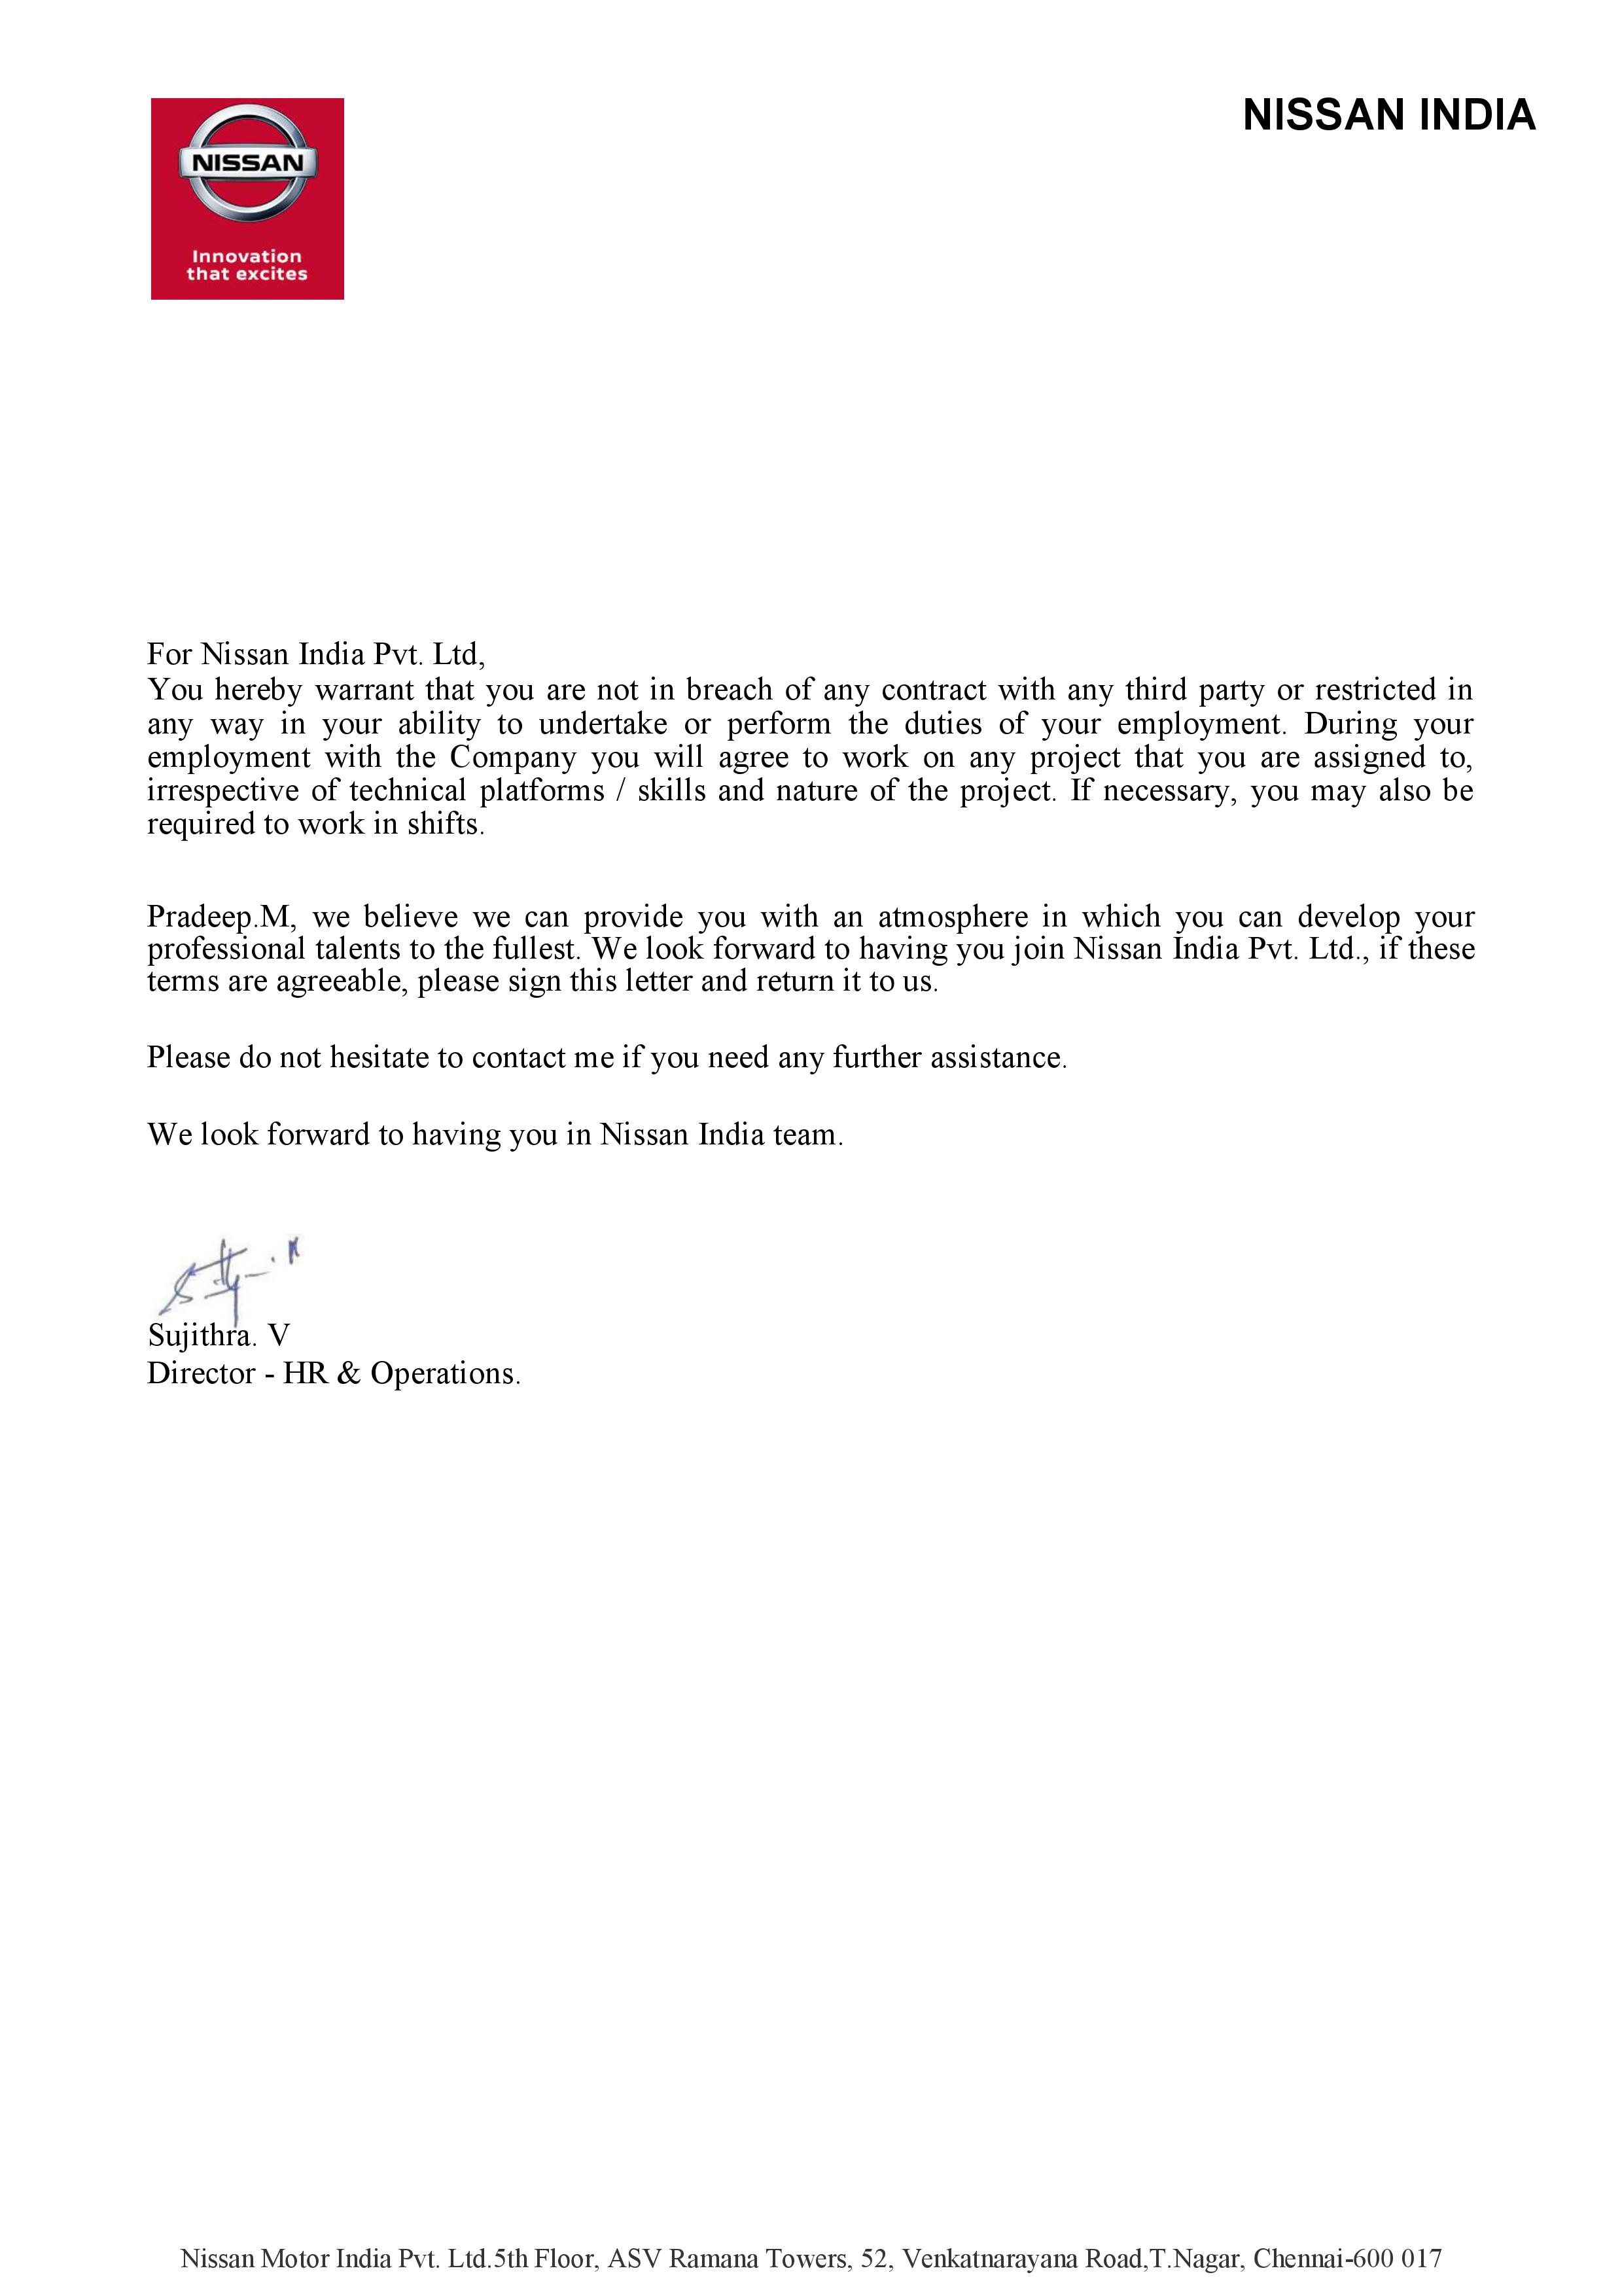 Pradeep Nissan Offer Letter_3